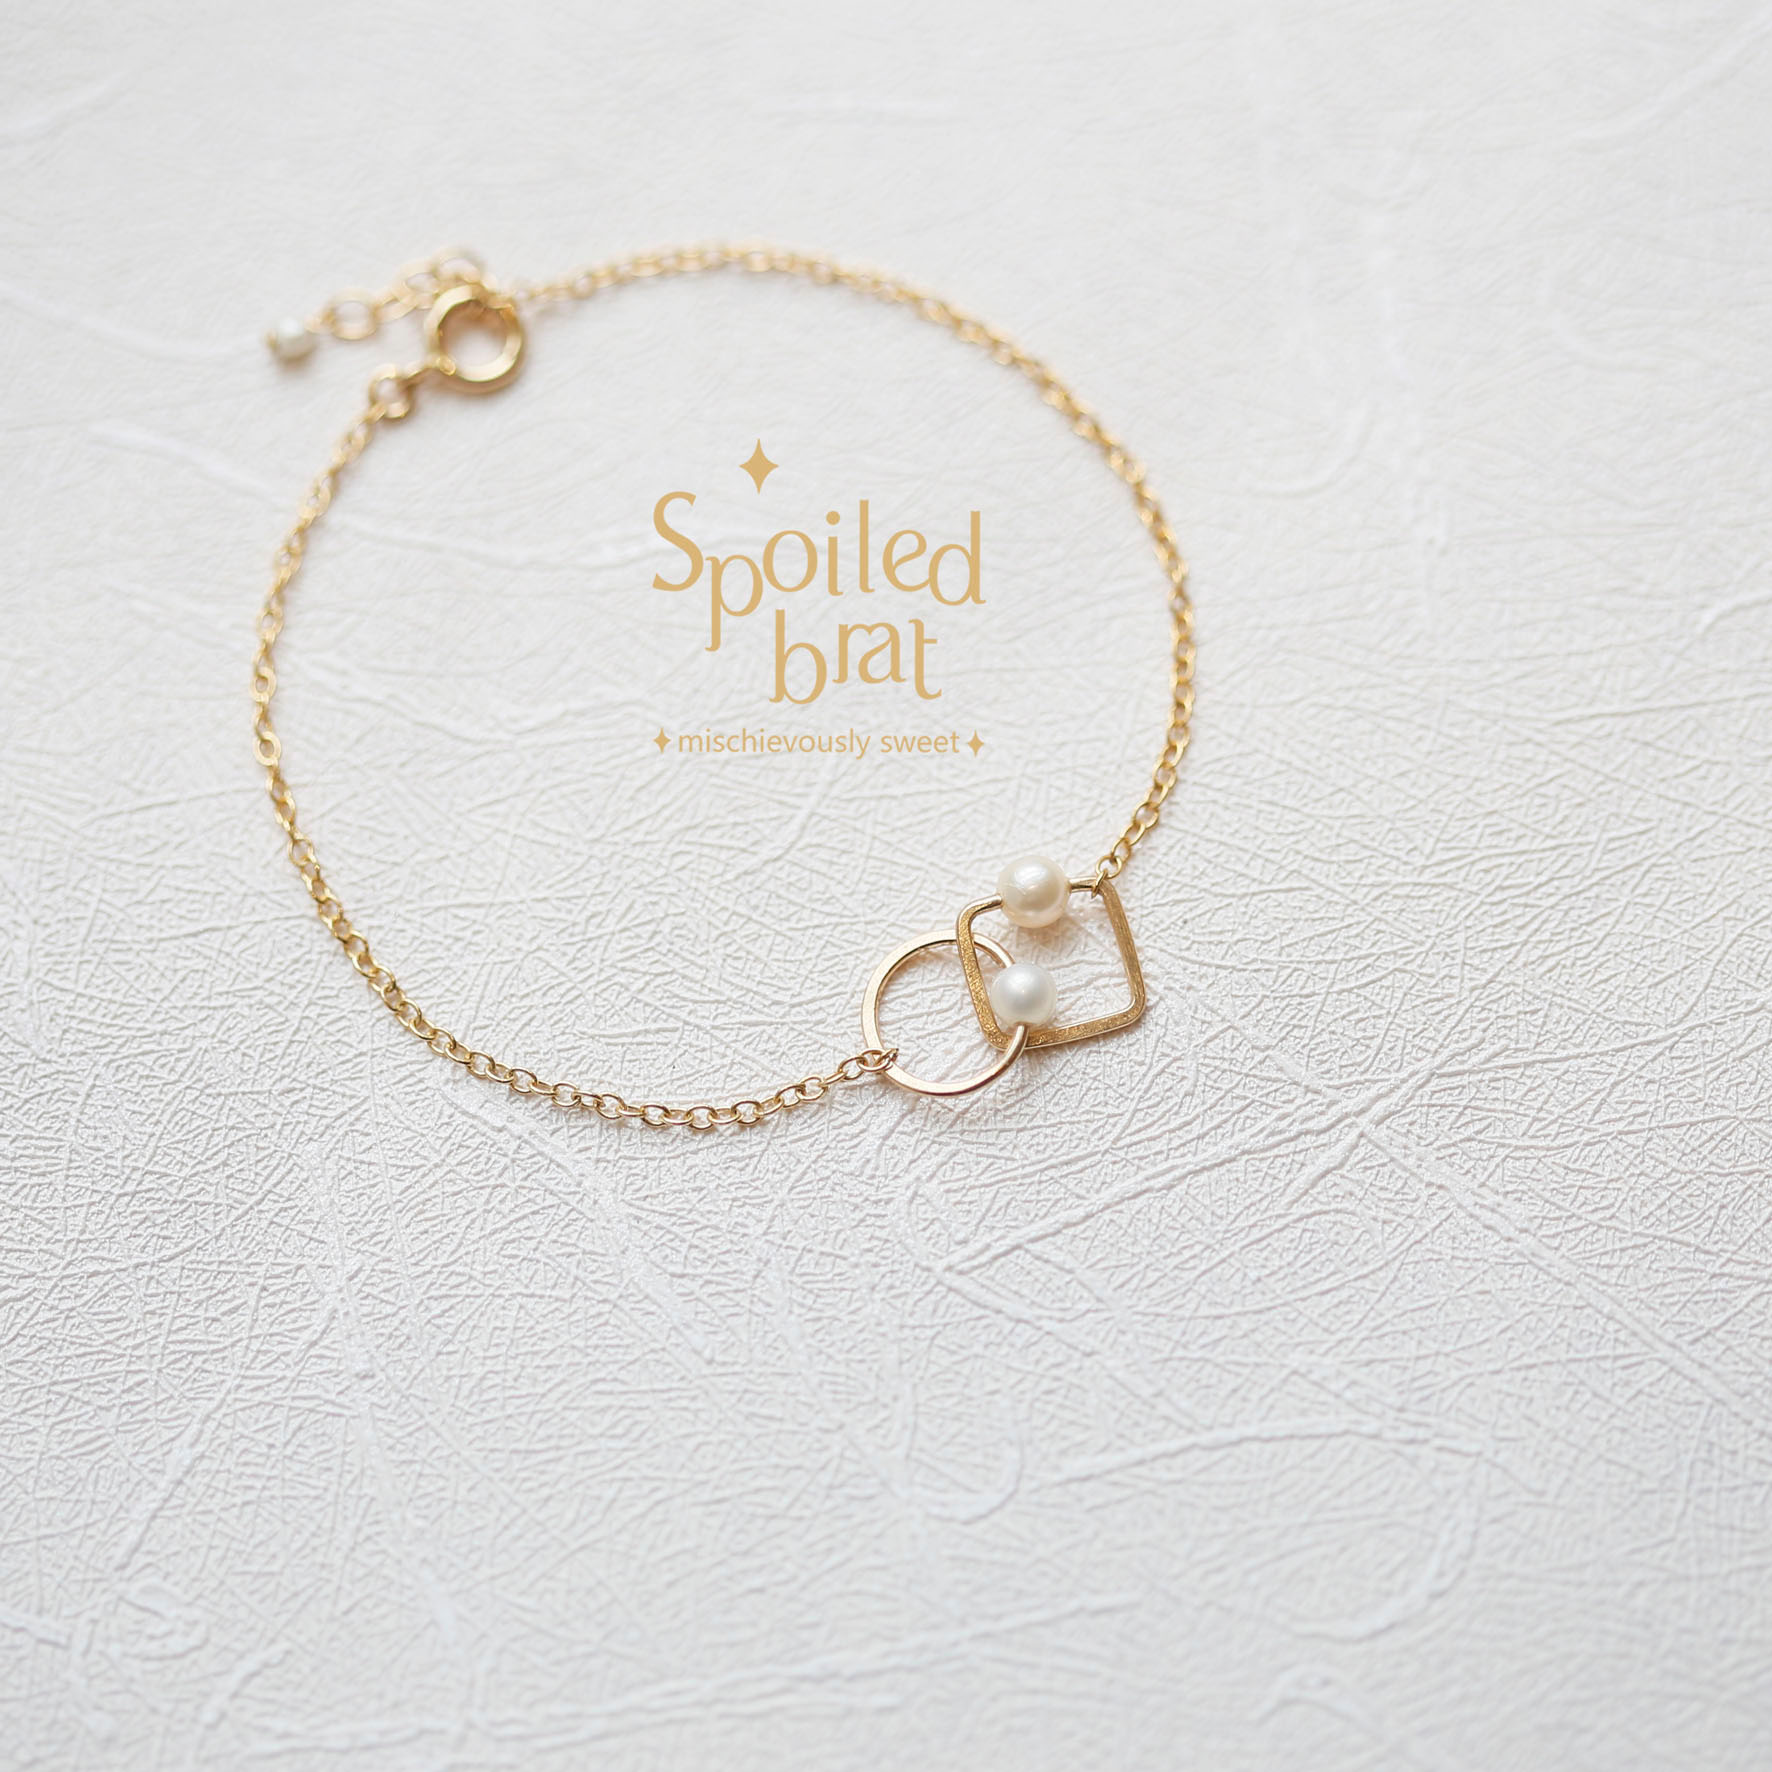 SpoiledBart Jewelry 14K注金 几何形 珍珠 简洁百搭 手链